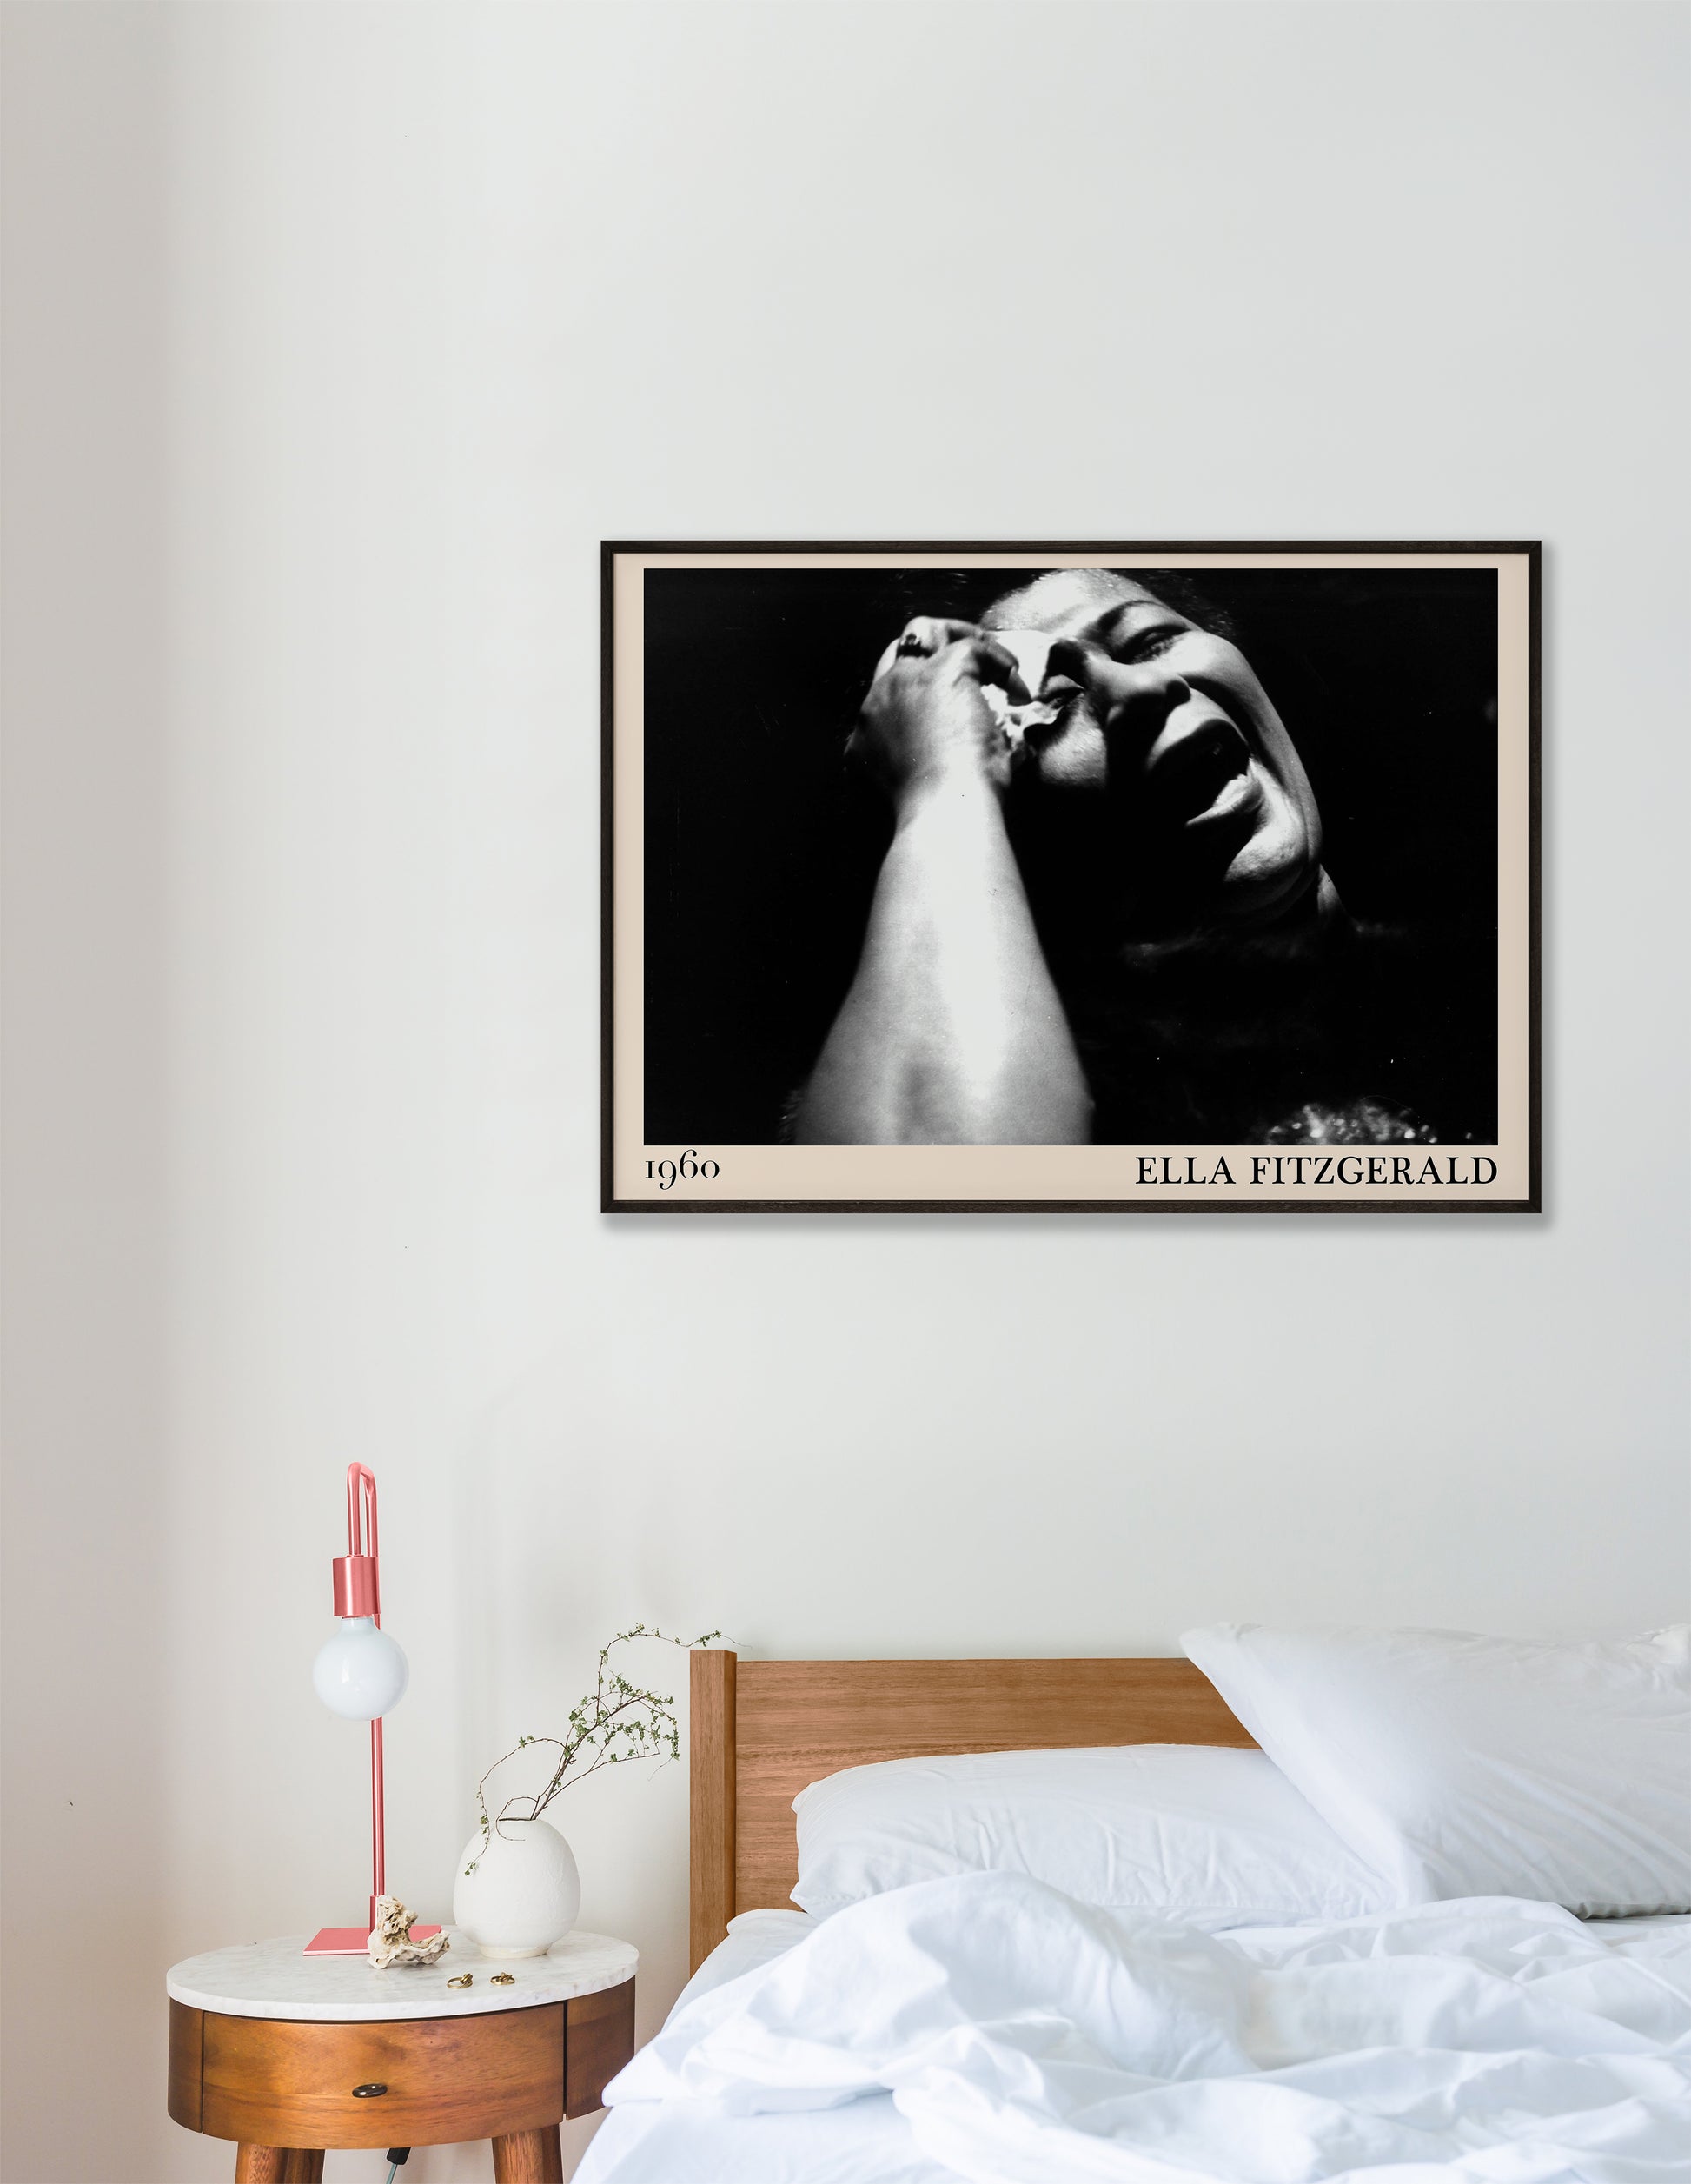 Vintage framed bedroom jazz poster of Ella Fitzgerald